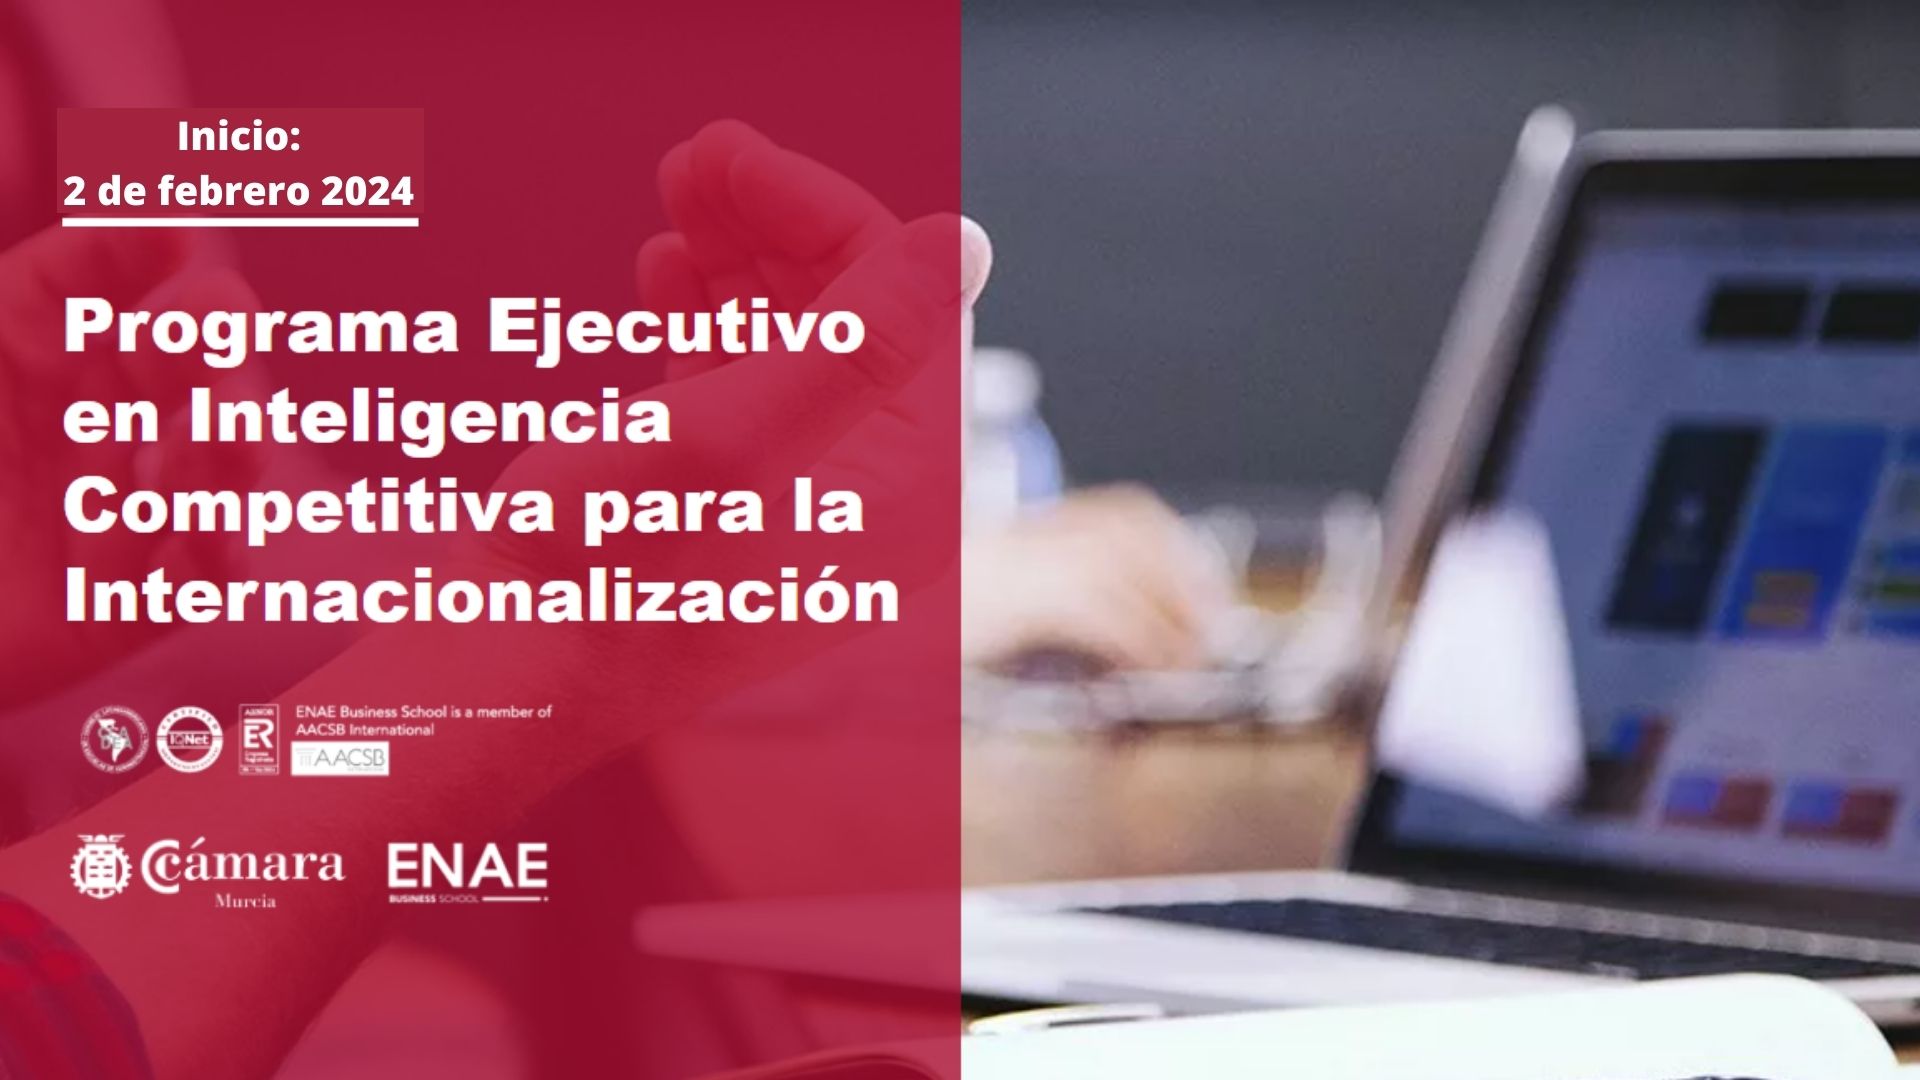 Inteligencia Competitiva para la Internacionalización | Programa Ejecutivo | Cámara de Comercio de Murcia | ENAE Business School